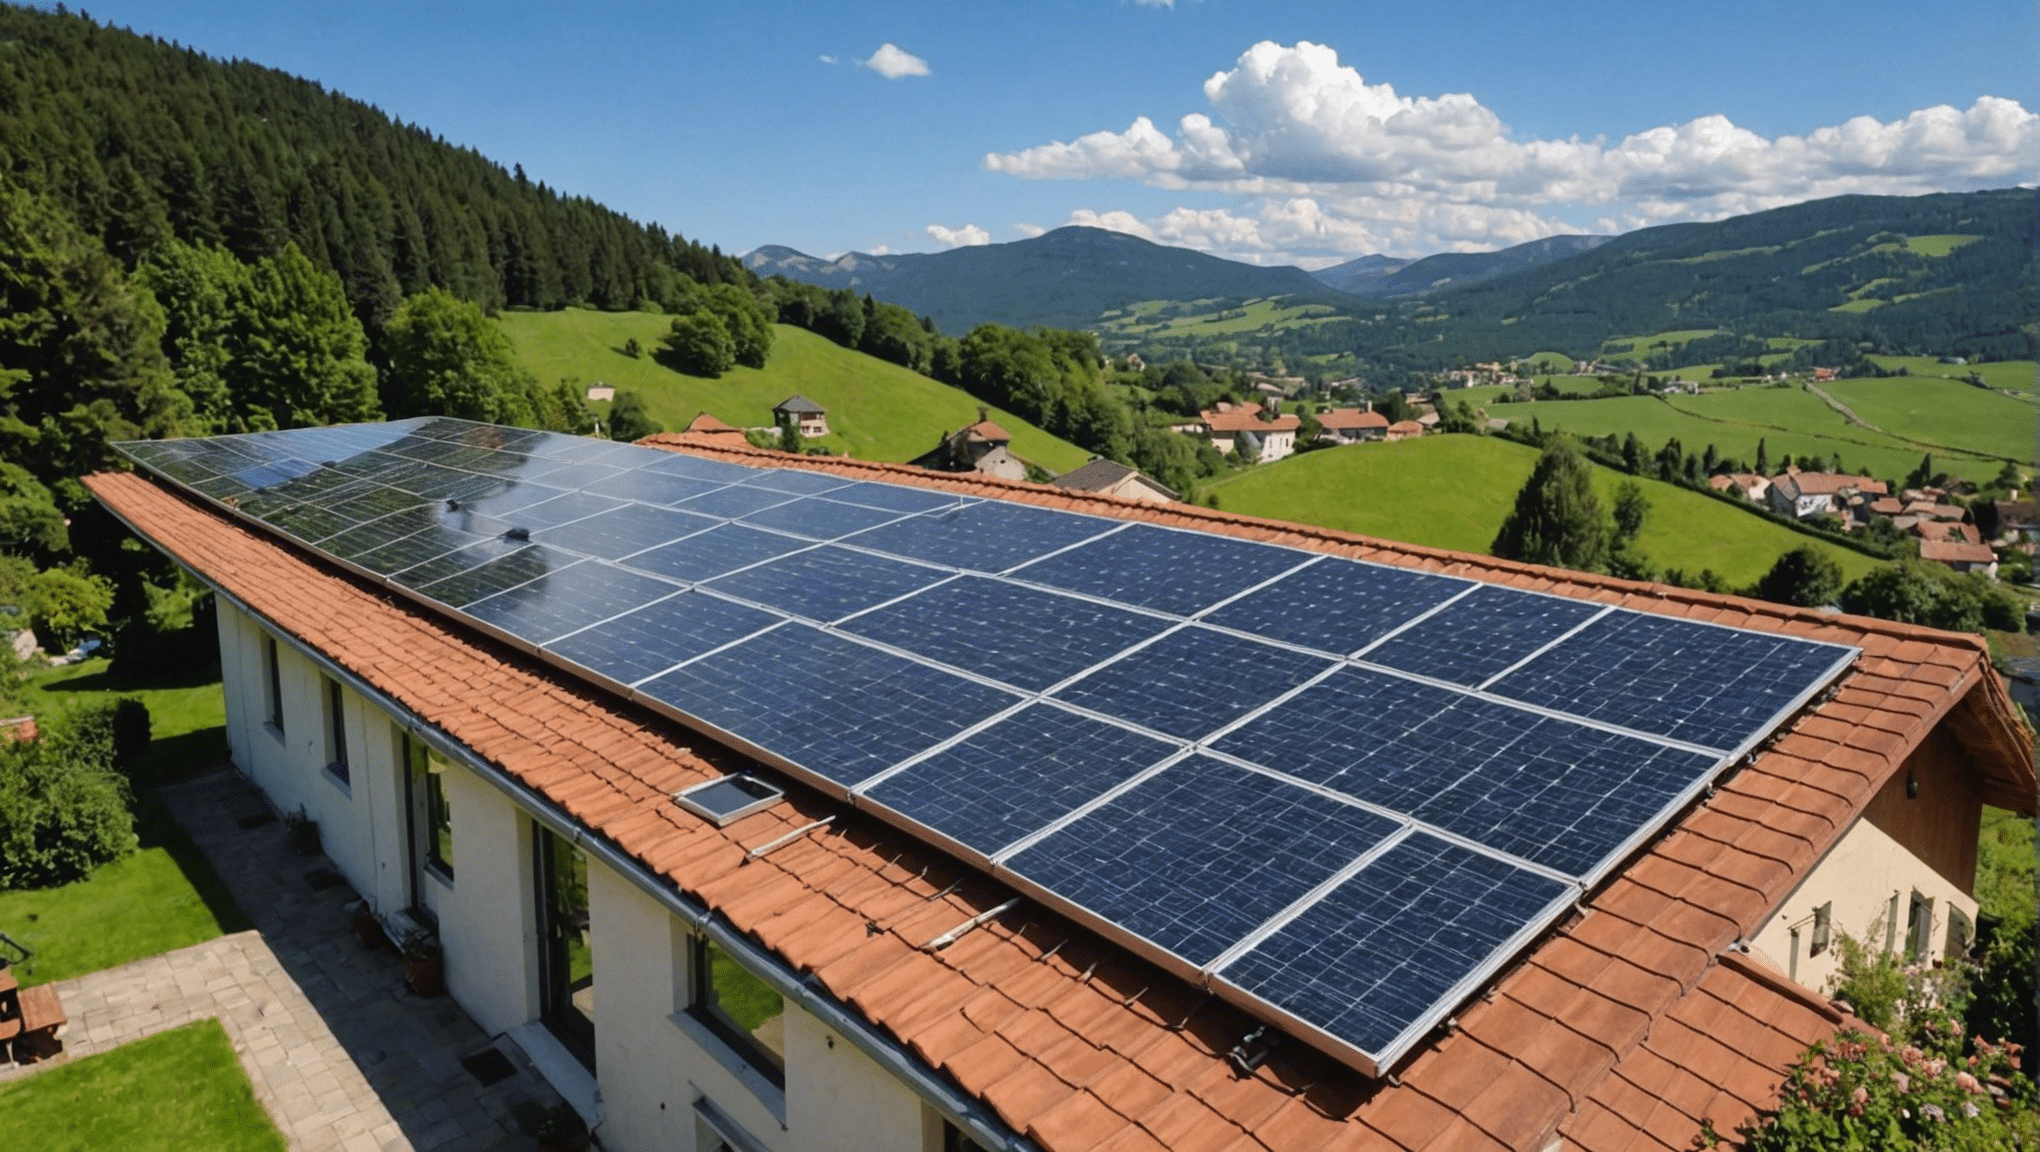 découvrez les possibilités d'accéder à l'énergie solaire sans frais initiaux. apprenez comment obtenir des panneaux solaires gratuitement.